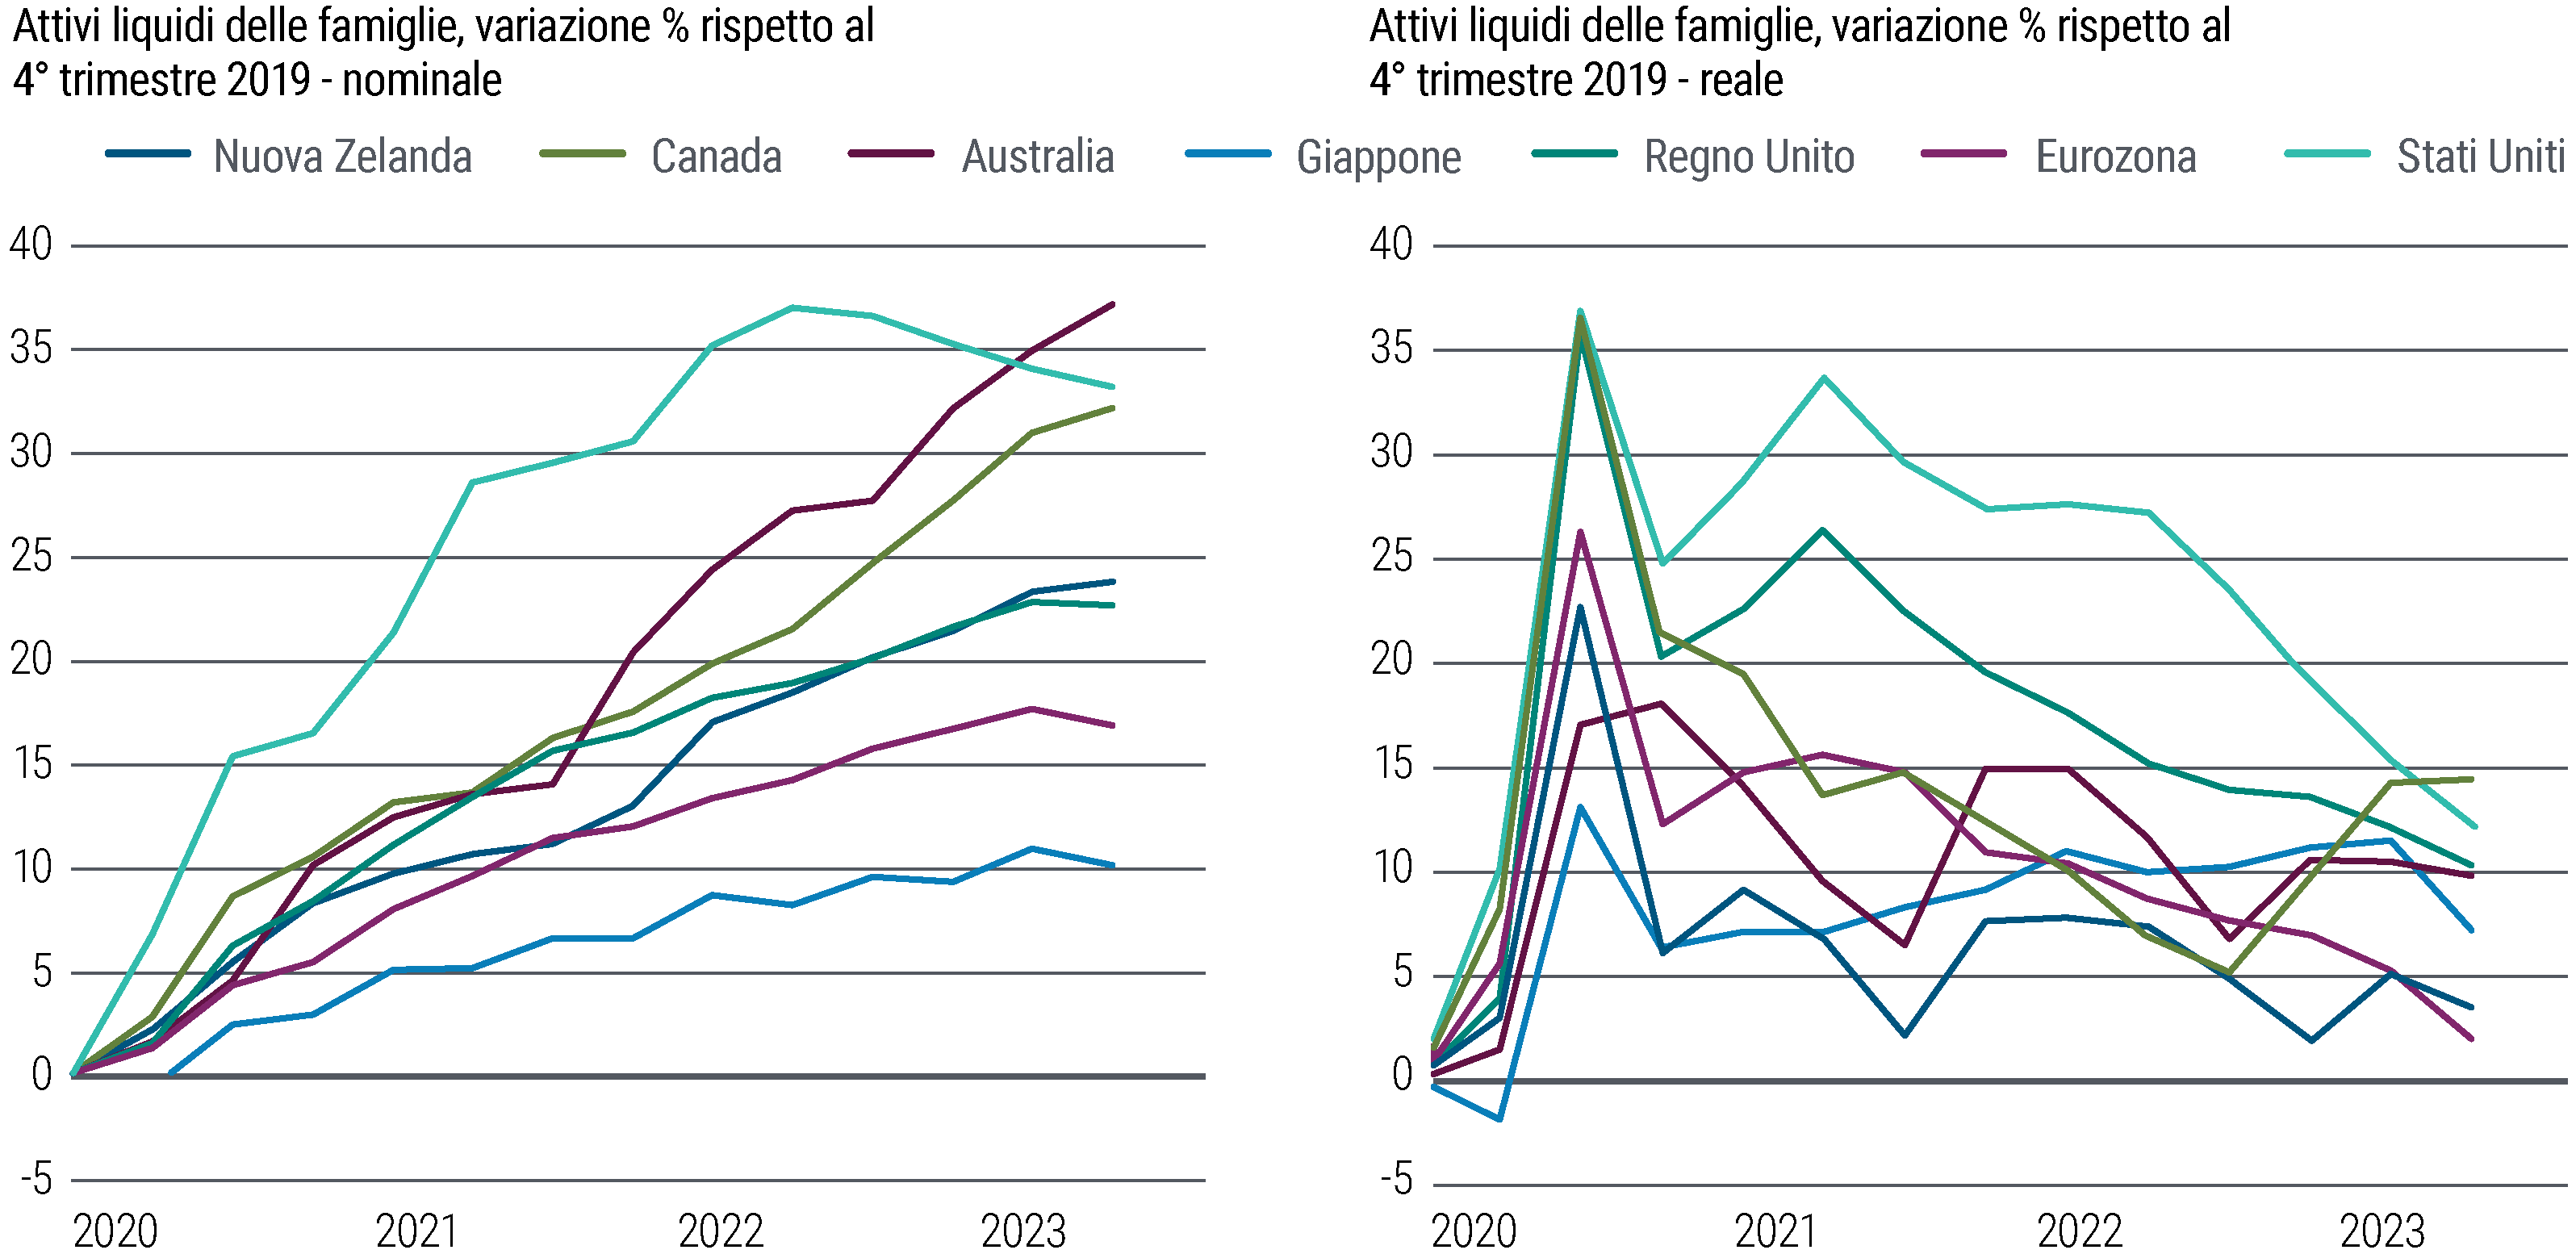 La Figura 1 presenta due grafici lineari, posti uno accanto all’altro. Il grafico a sinistra mostra la variazione percentuale in termini nominali, rispetto al 4° trimestre 2019, degli attivi liquidi delle famiglie nelle economie dei mercati sviluppati (Nuova Zelanda, Canada, Australia, Giappone, Regno Unito, Eurozona e Stati Uniti) dal 2020 a marzo 2023. Il grafico a destra mostra invece la variazione in termini reali degli attivi liquidi delle famiglie con riferimento agli stessi paesi e al medesimo periodo. In termini nominali, rispetto al 4° trimestre 2019, gli attivi liquidi delle famiglie, che comprendono valuta, depositi e fondi monetari, sono costantemente cresciuti negli Stati Uniti, sino al 37% a marzo 2022 per poi diminuire. Anche in Australia sono aumentati in modo costante rispetto ai livelli del 4° trimestre 2019, sino al 37% a marzo 2023. Nel Regno Unito, nell’Eurozona e in Giappone sono cresciuti ma in modo meno marcato e hanno mostrato segni di discesa. In termini reali, dopo il picco a metà 2020, la crescita degli attivi liquidi delle famiglie rispetto al 4° trimestre 2019 ha rallentato in modo costante in tutti i paesi, ma la variazione si è mantenuta al di sopra dello zero. Le fonti dei dati sono PIMCO, l’OCSE, gli istituti nazionali di statistica e le banche centrali; i dati sono all’11 settembre 2023.